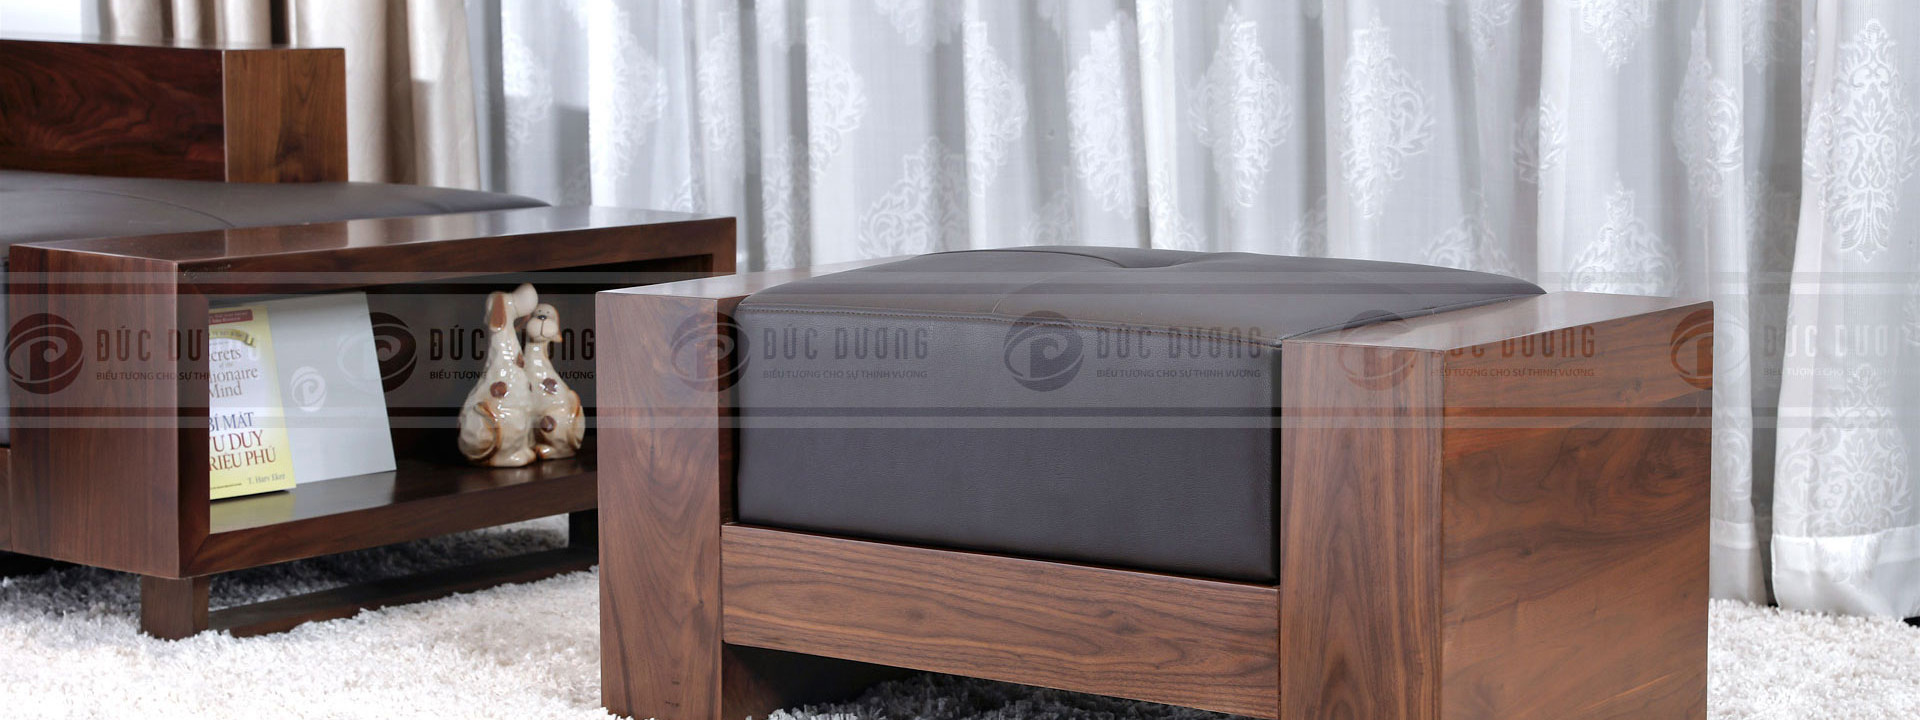 5 bộ bàn ghế sofa gỗ óc chó cao cấp đẹp phù hợp cho nhiều phong cách thiết kế